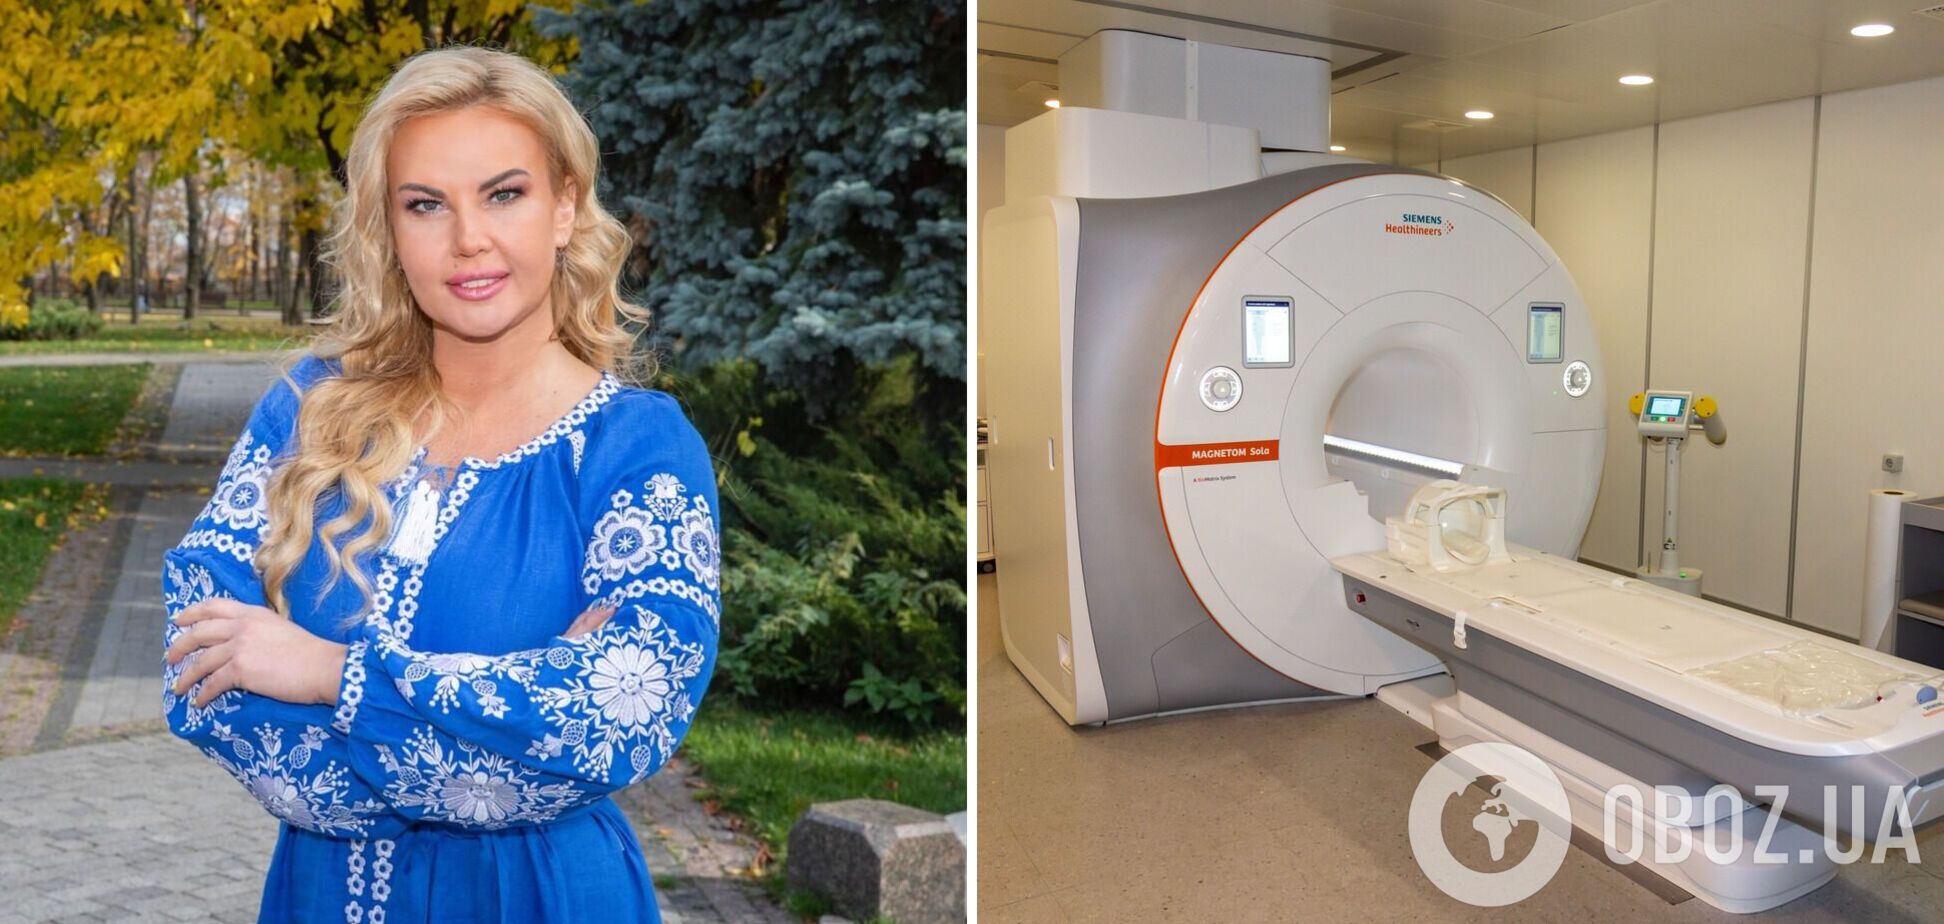 Камалия попала в больницу и испугала снимками возле аппарата МРТ: что случилось